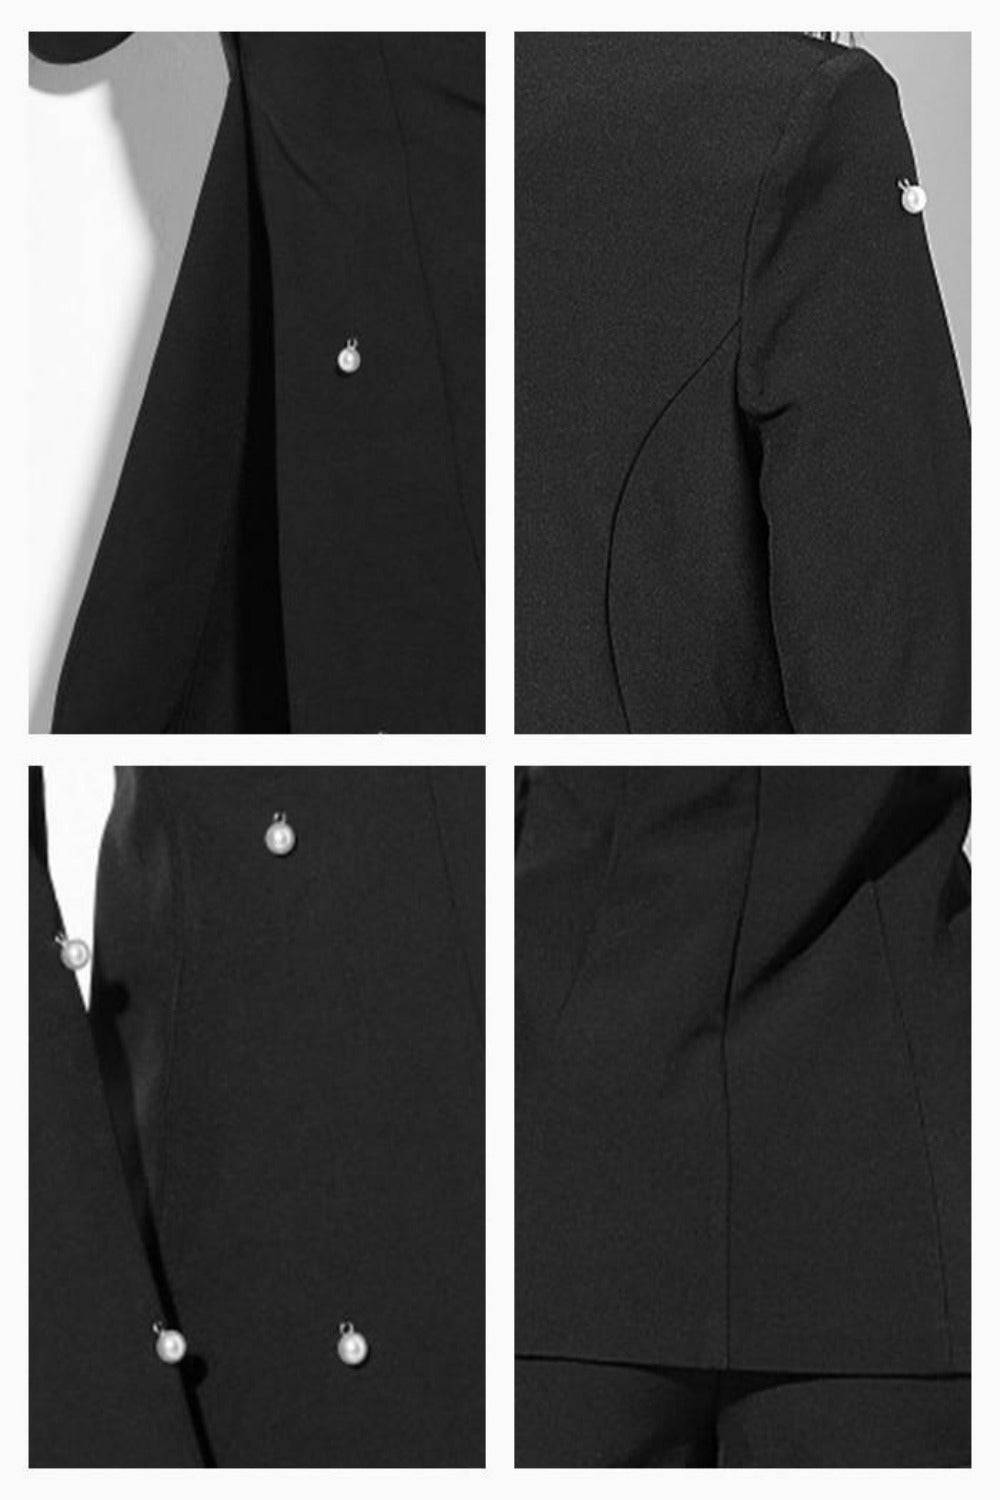 Pearl Long Sleeve Blazer& Short Pants Set - Black - TGC Boutique - 2 Piece Set